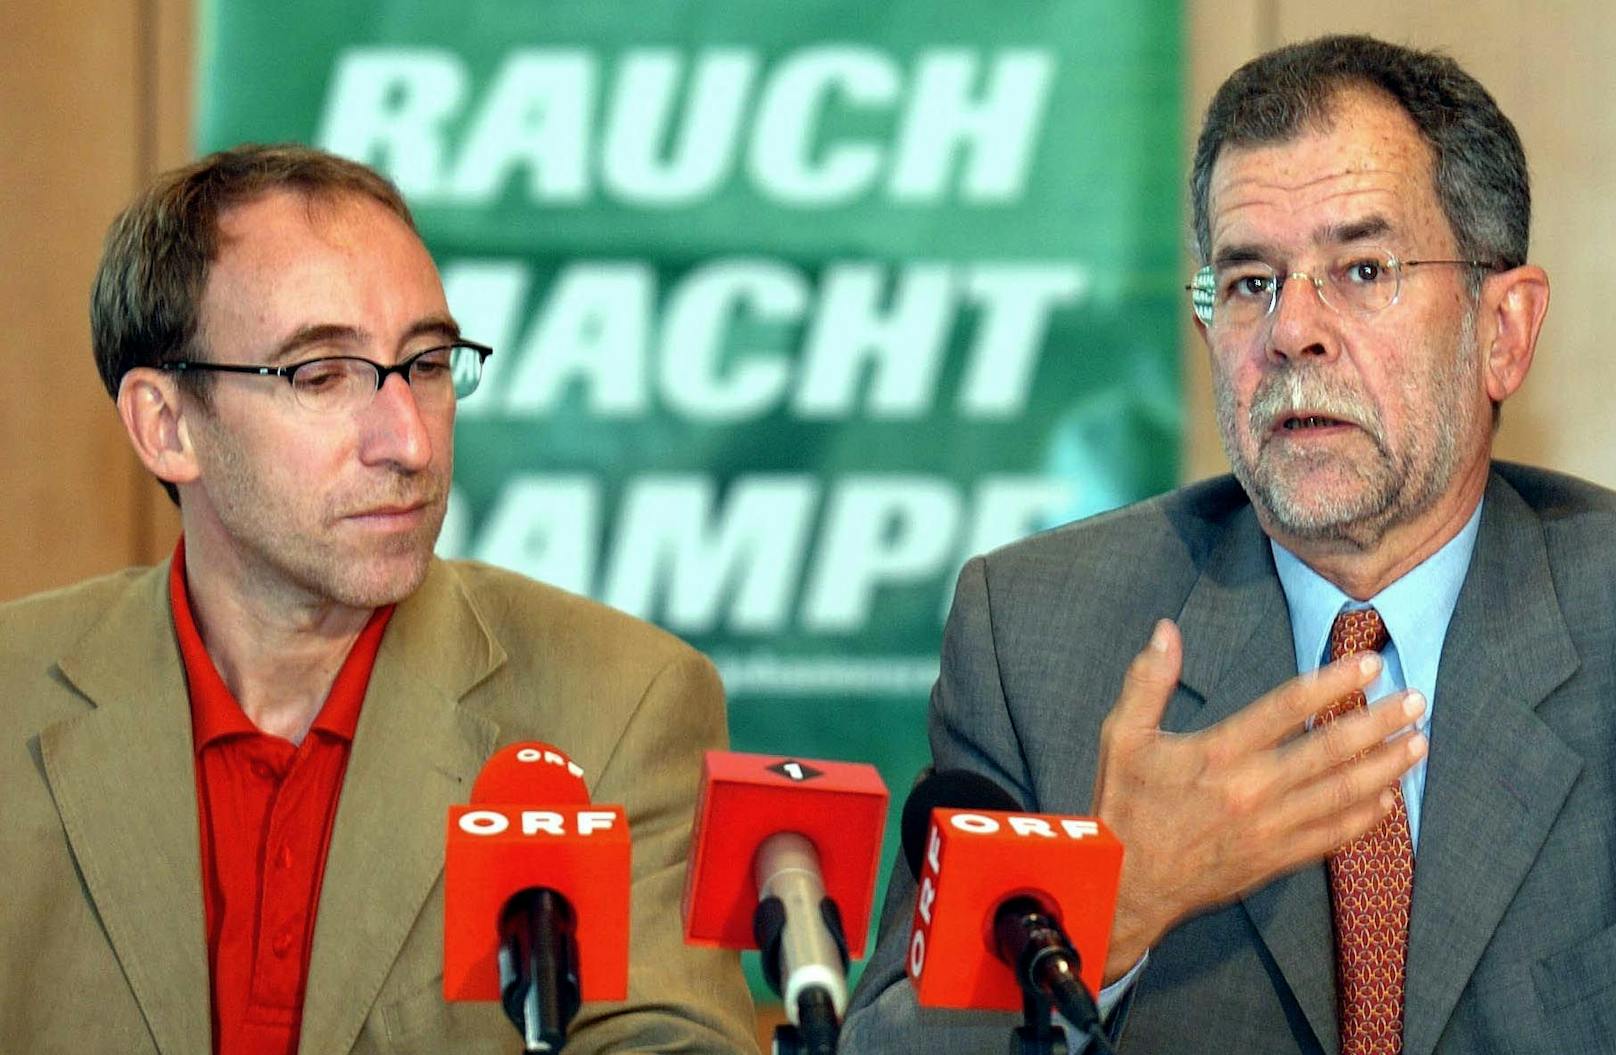 Archivbild: Der Spitzenkandidat der Vorarlberger Grünen für die kommende Landtagswahl Johannes Rauch und Bundessprecher Alexander Van der Bellen während einer Pressekonferenz am 8. September 2004 in Feldkirch. 